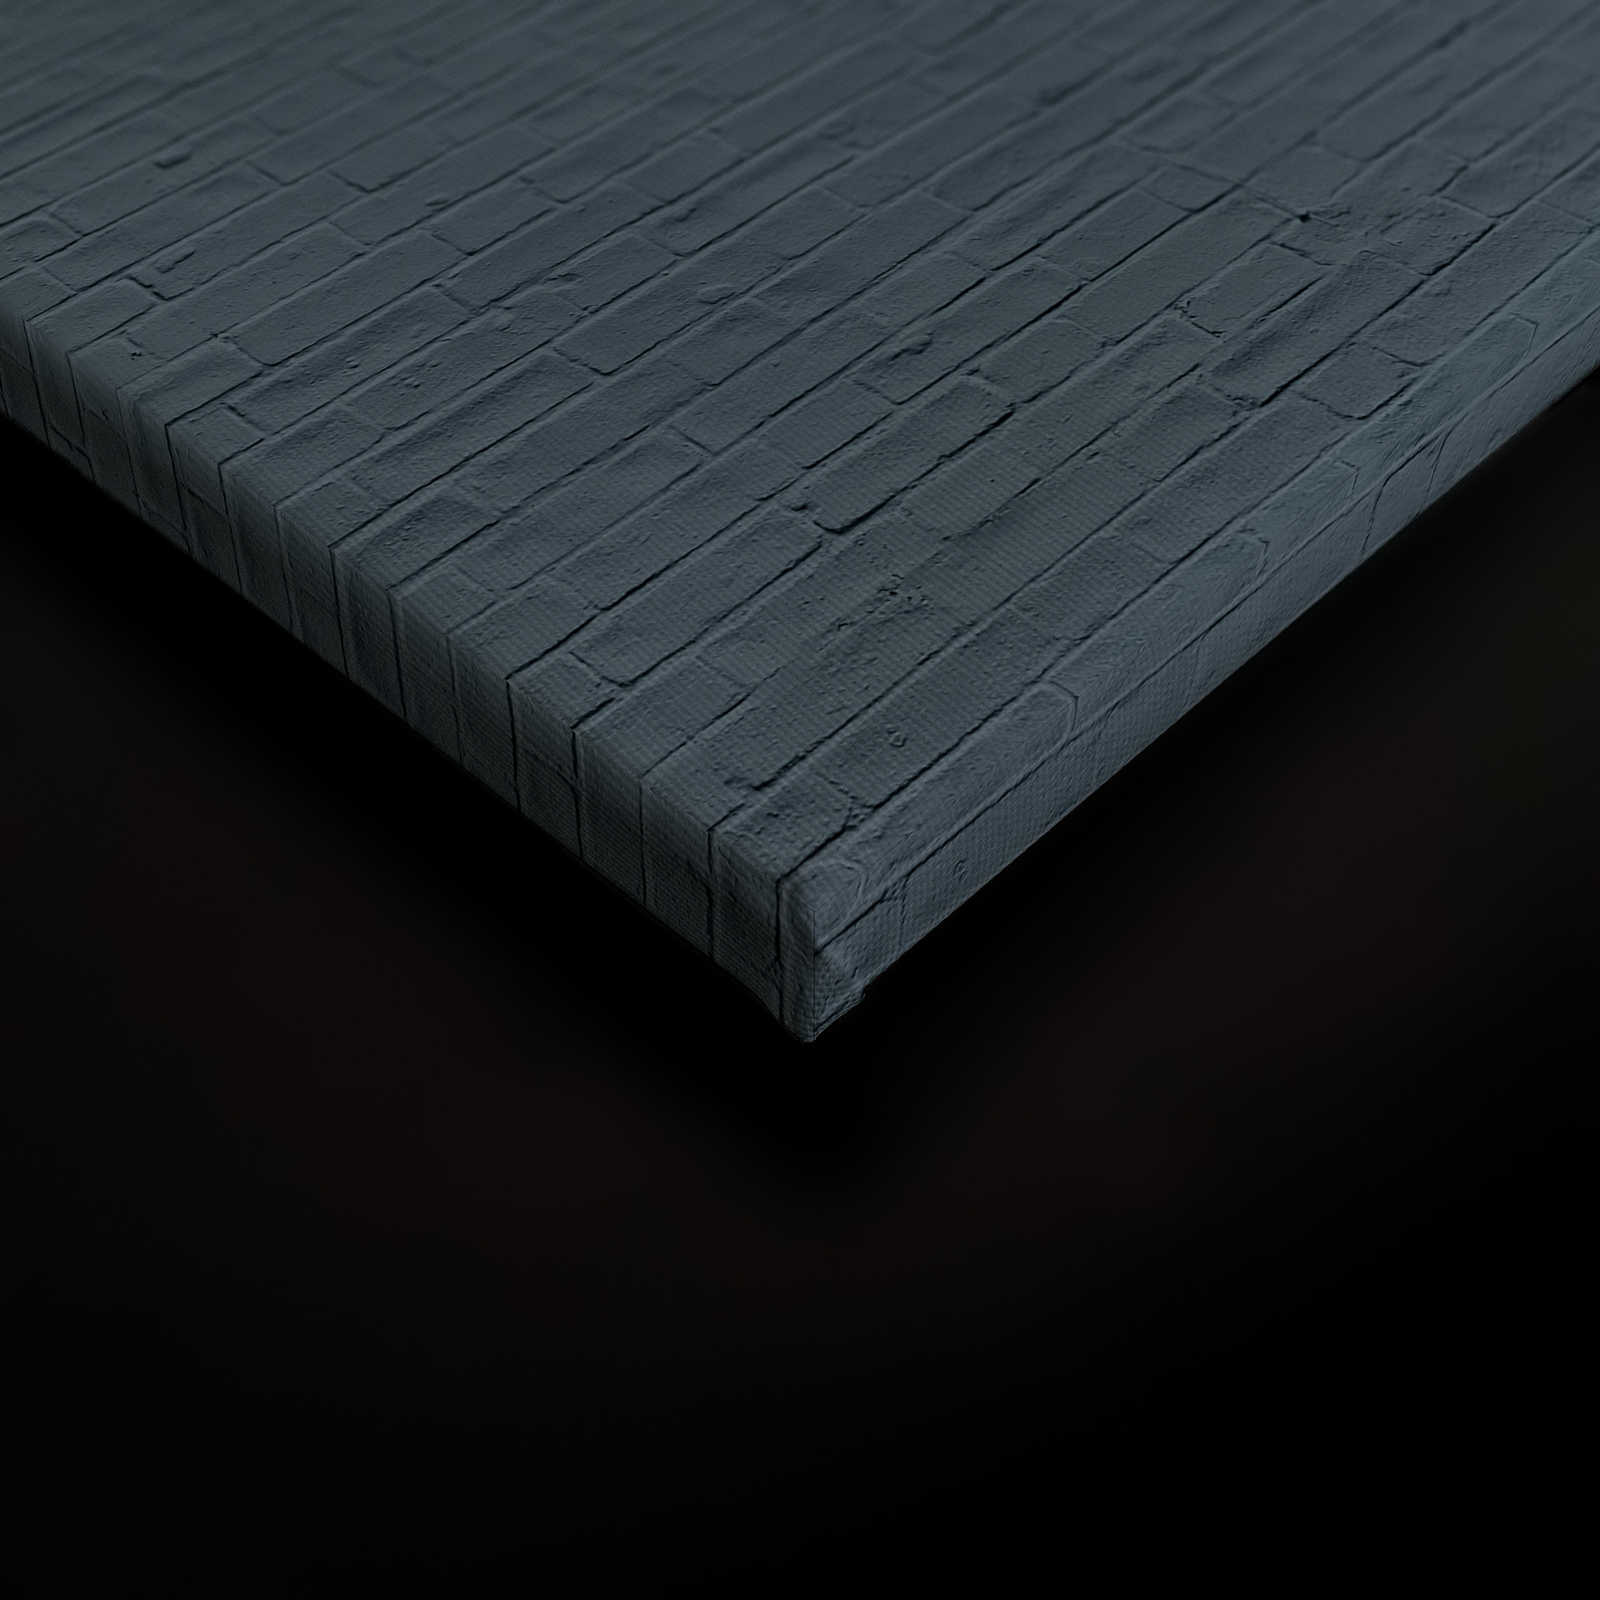             Brick by Brick 2 - Quadro su tela con grafica - 0,90 m x 0,60 m
        